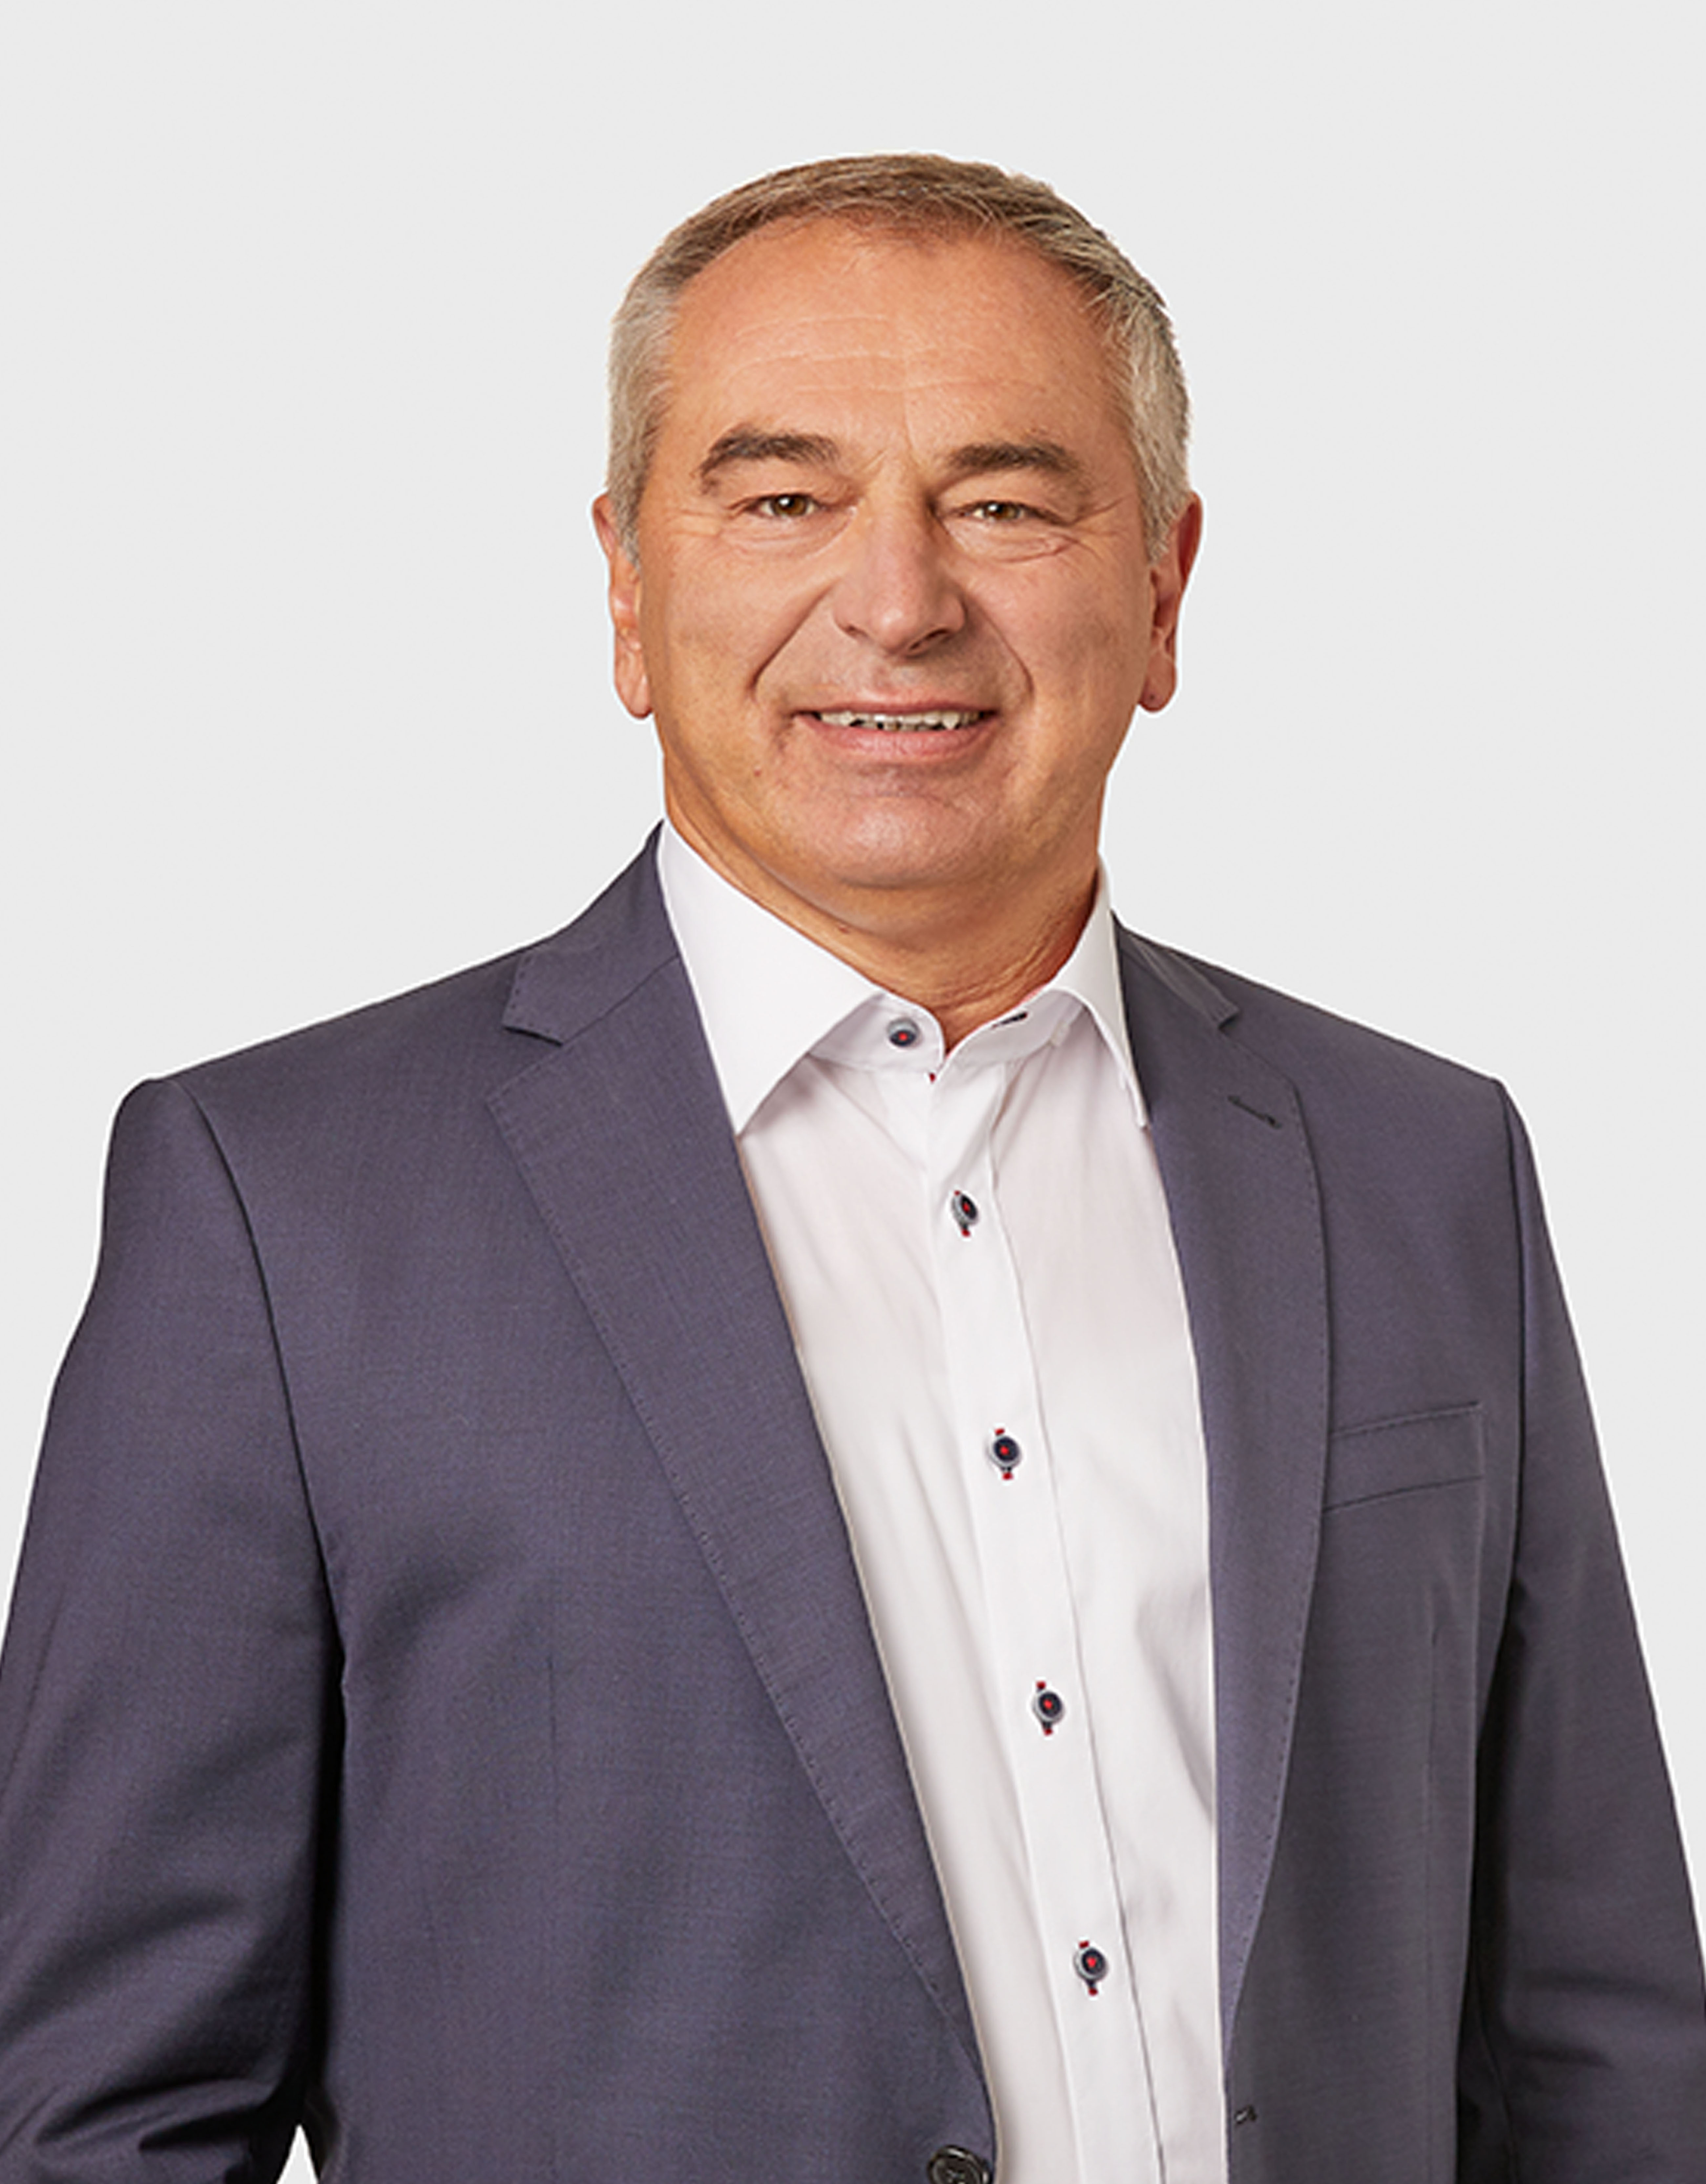 Holger Schmelzeisen